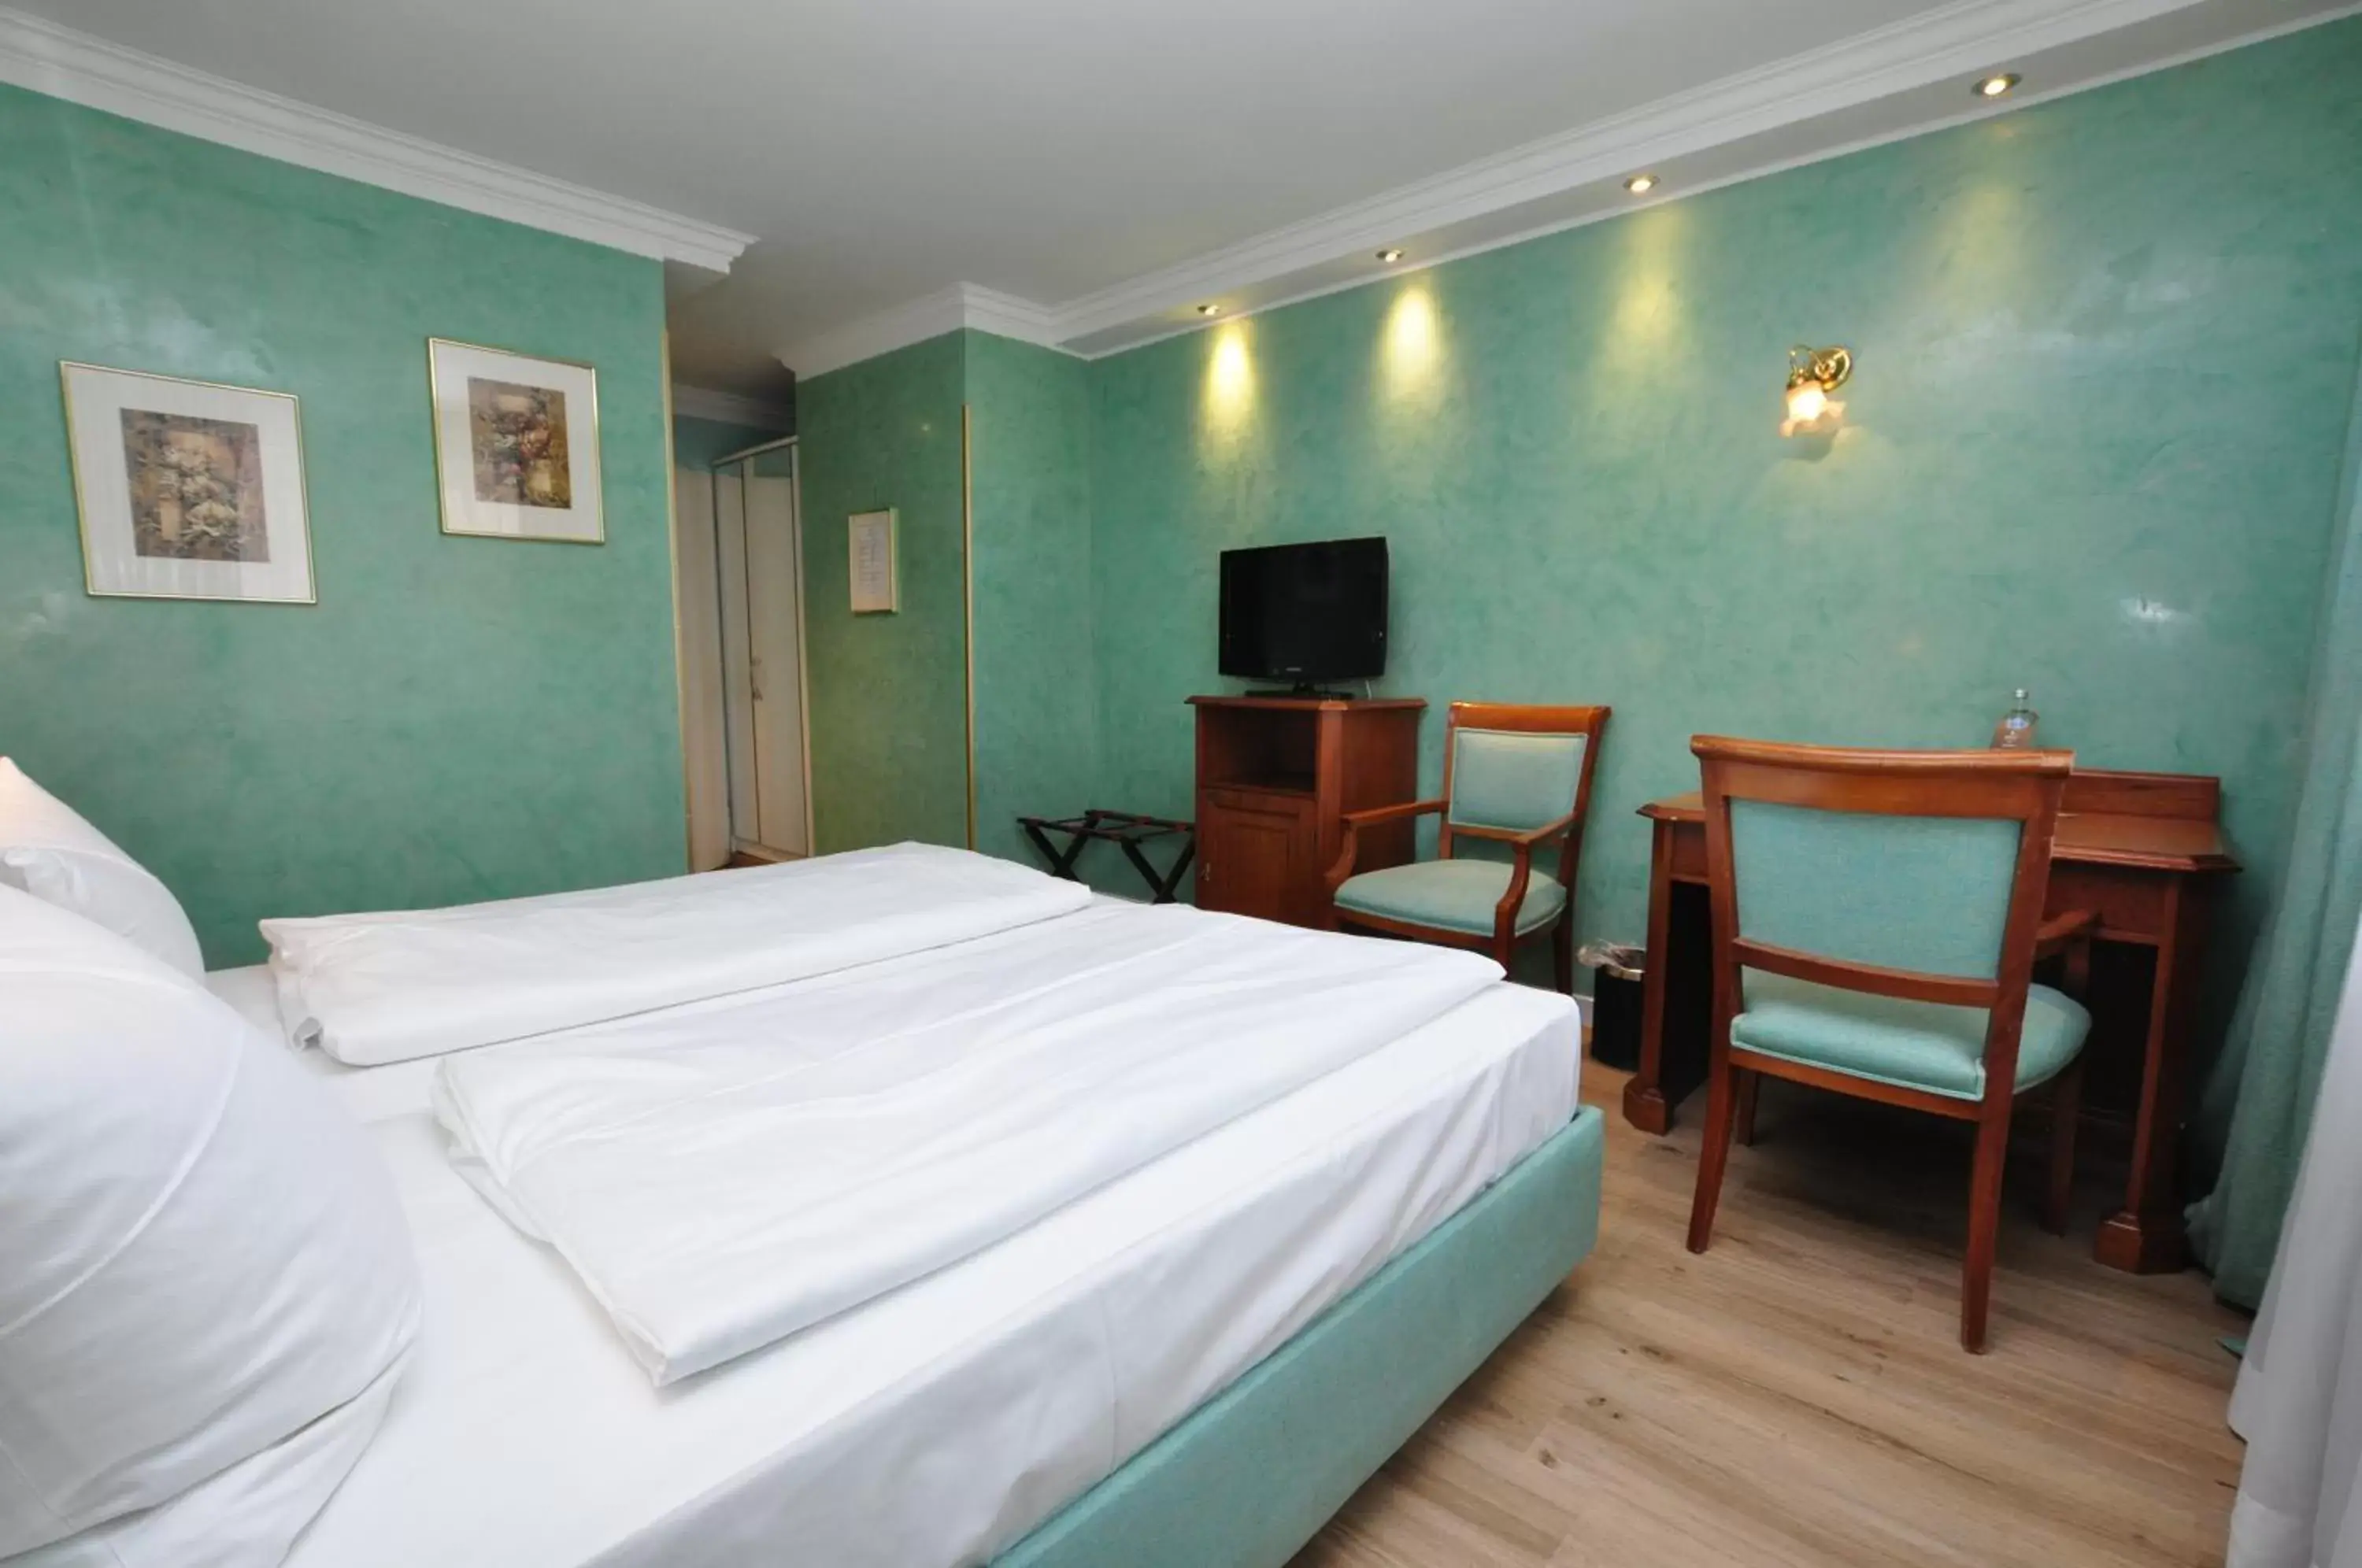 Double Room in Hotel Altmünchen by Blattl